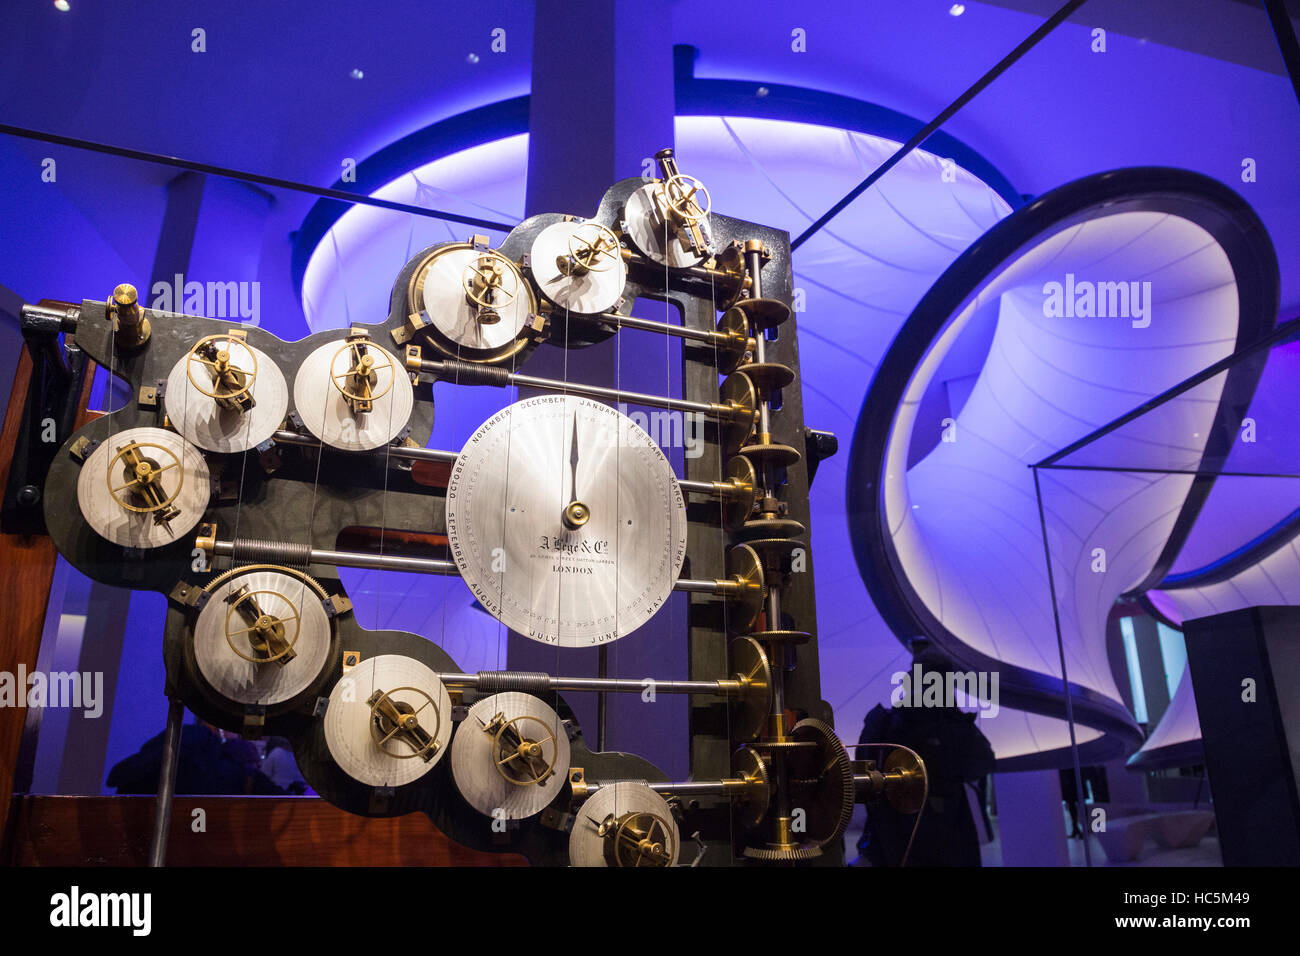 Часовой зал. Музей науки в Лондоне. Национальный музей науки в Лондоне зал часов. Экспонирование математика. Часовая зала.